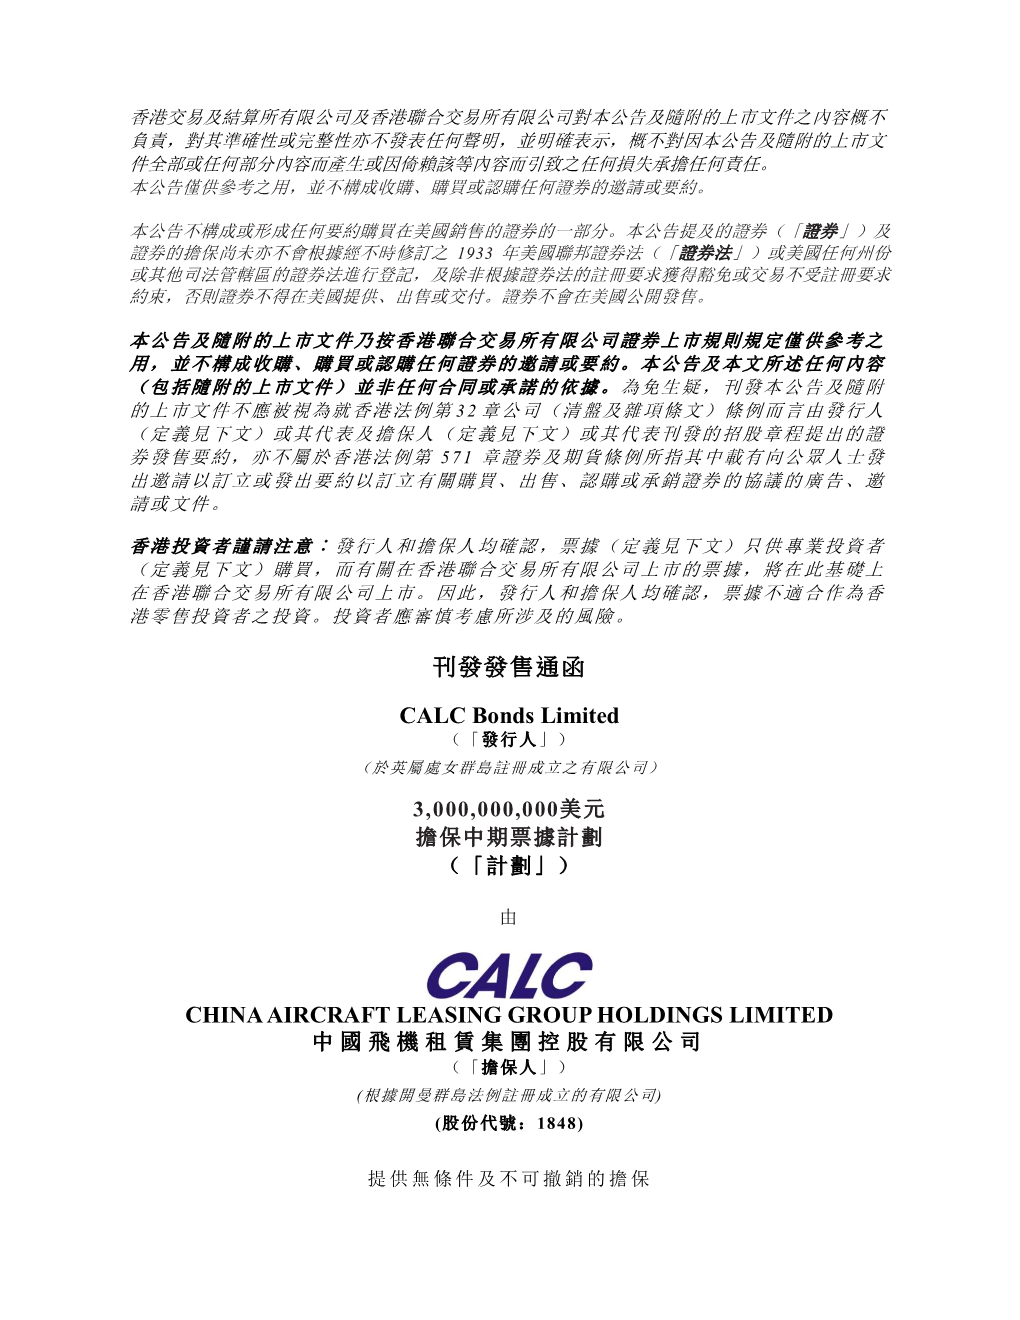 刊發發售通函 CALC Bonds Limited CHINA AIRCRAFT LEASING